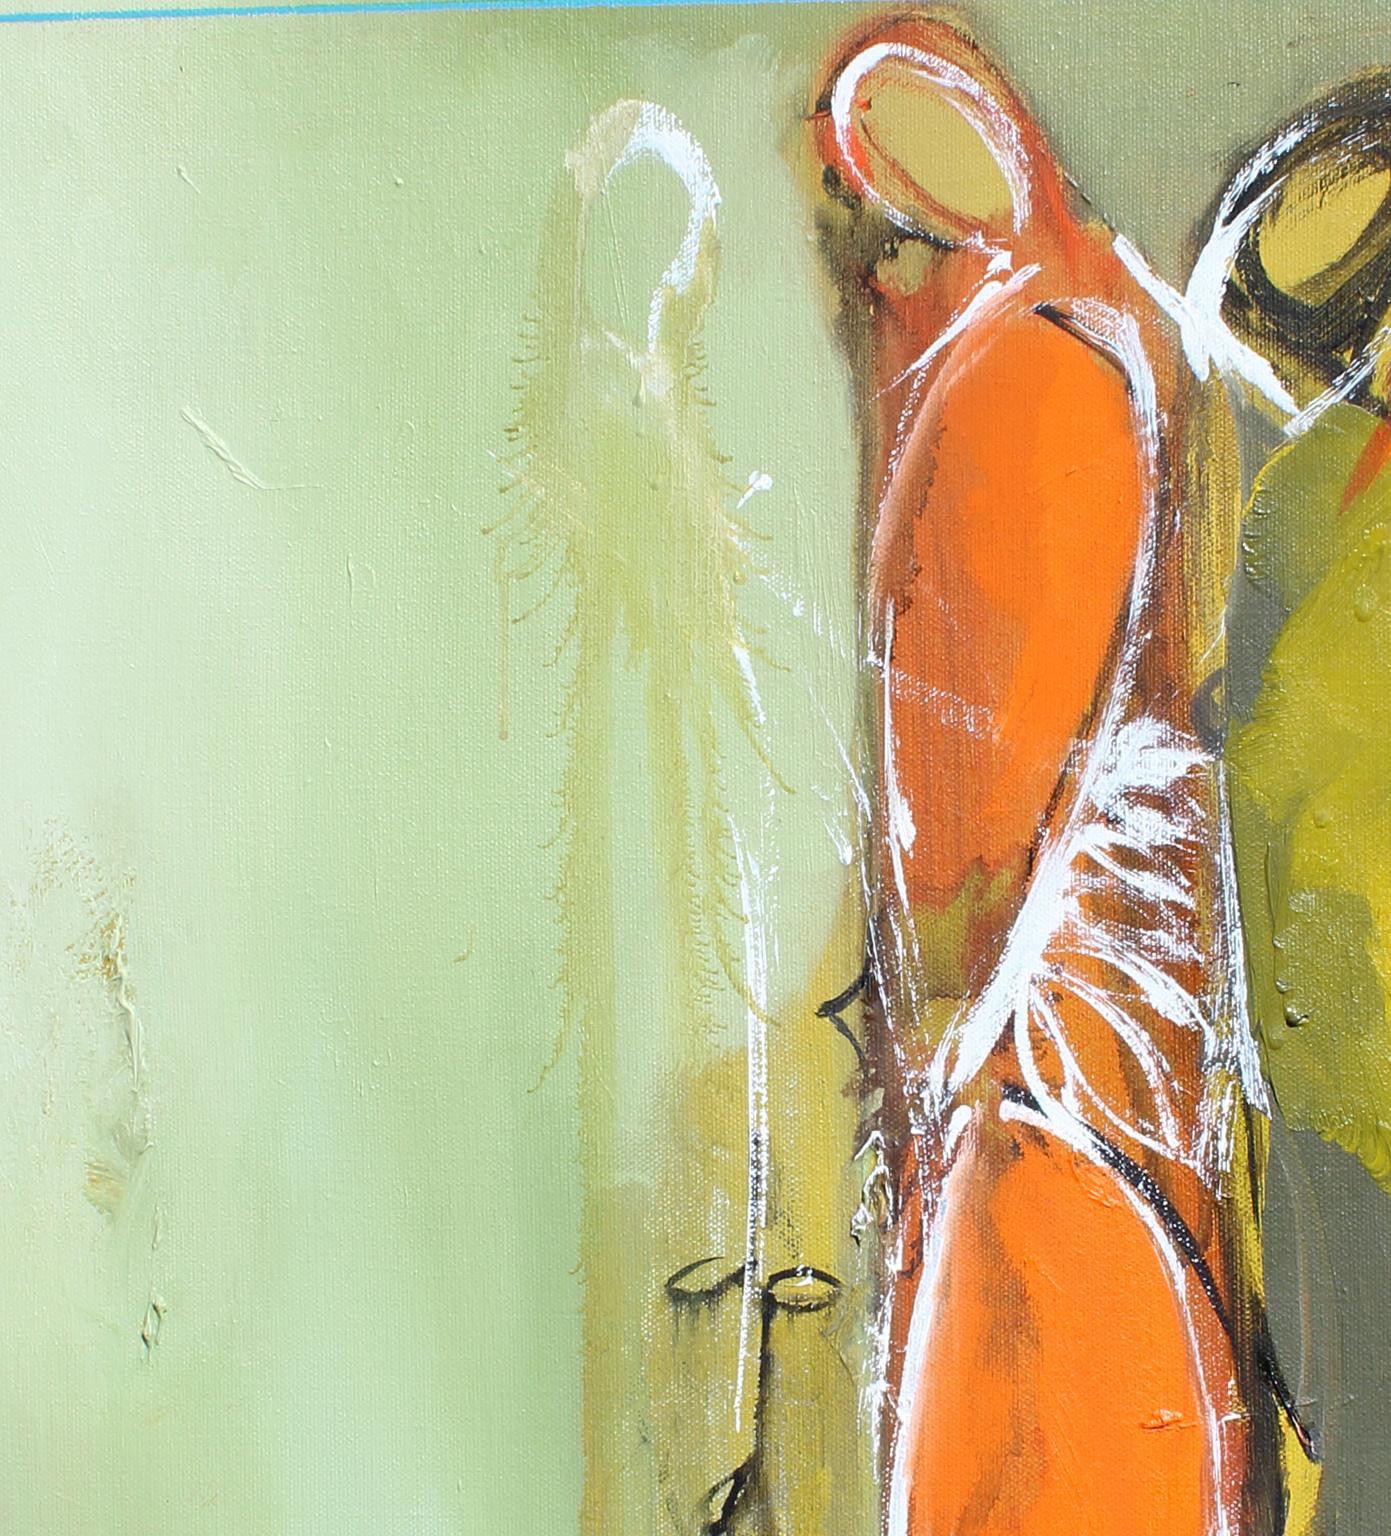 Identität, 20x24 Zoll, Öl auf Leinwand. Erwähnungen des Künstlers  Moderner moderner abstrakter expressionistischer Künstler. (Beige), Figurative Painting, von KOKO HOVAGUIMIAN